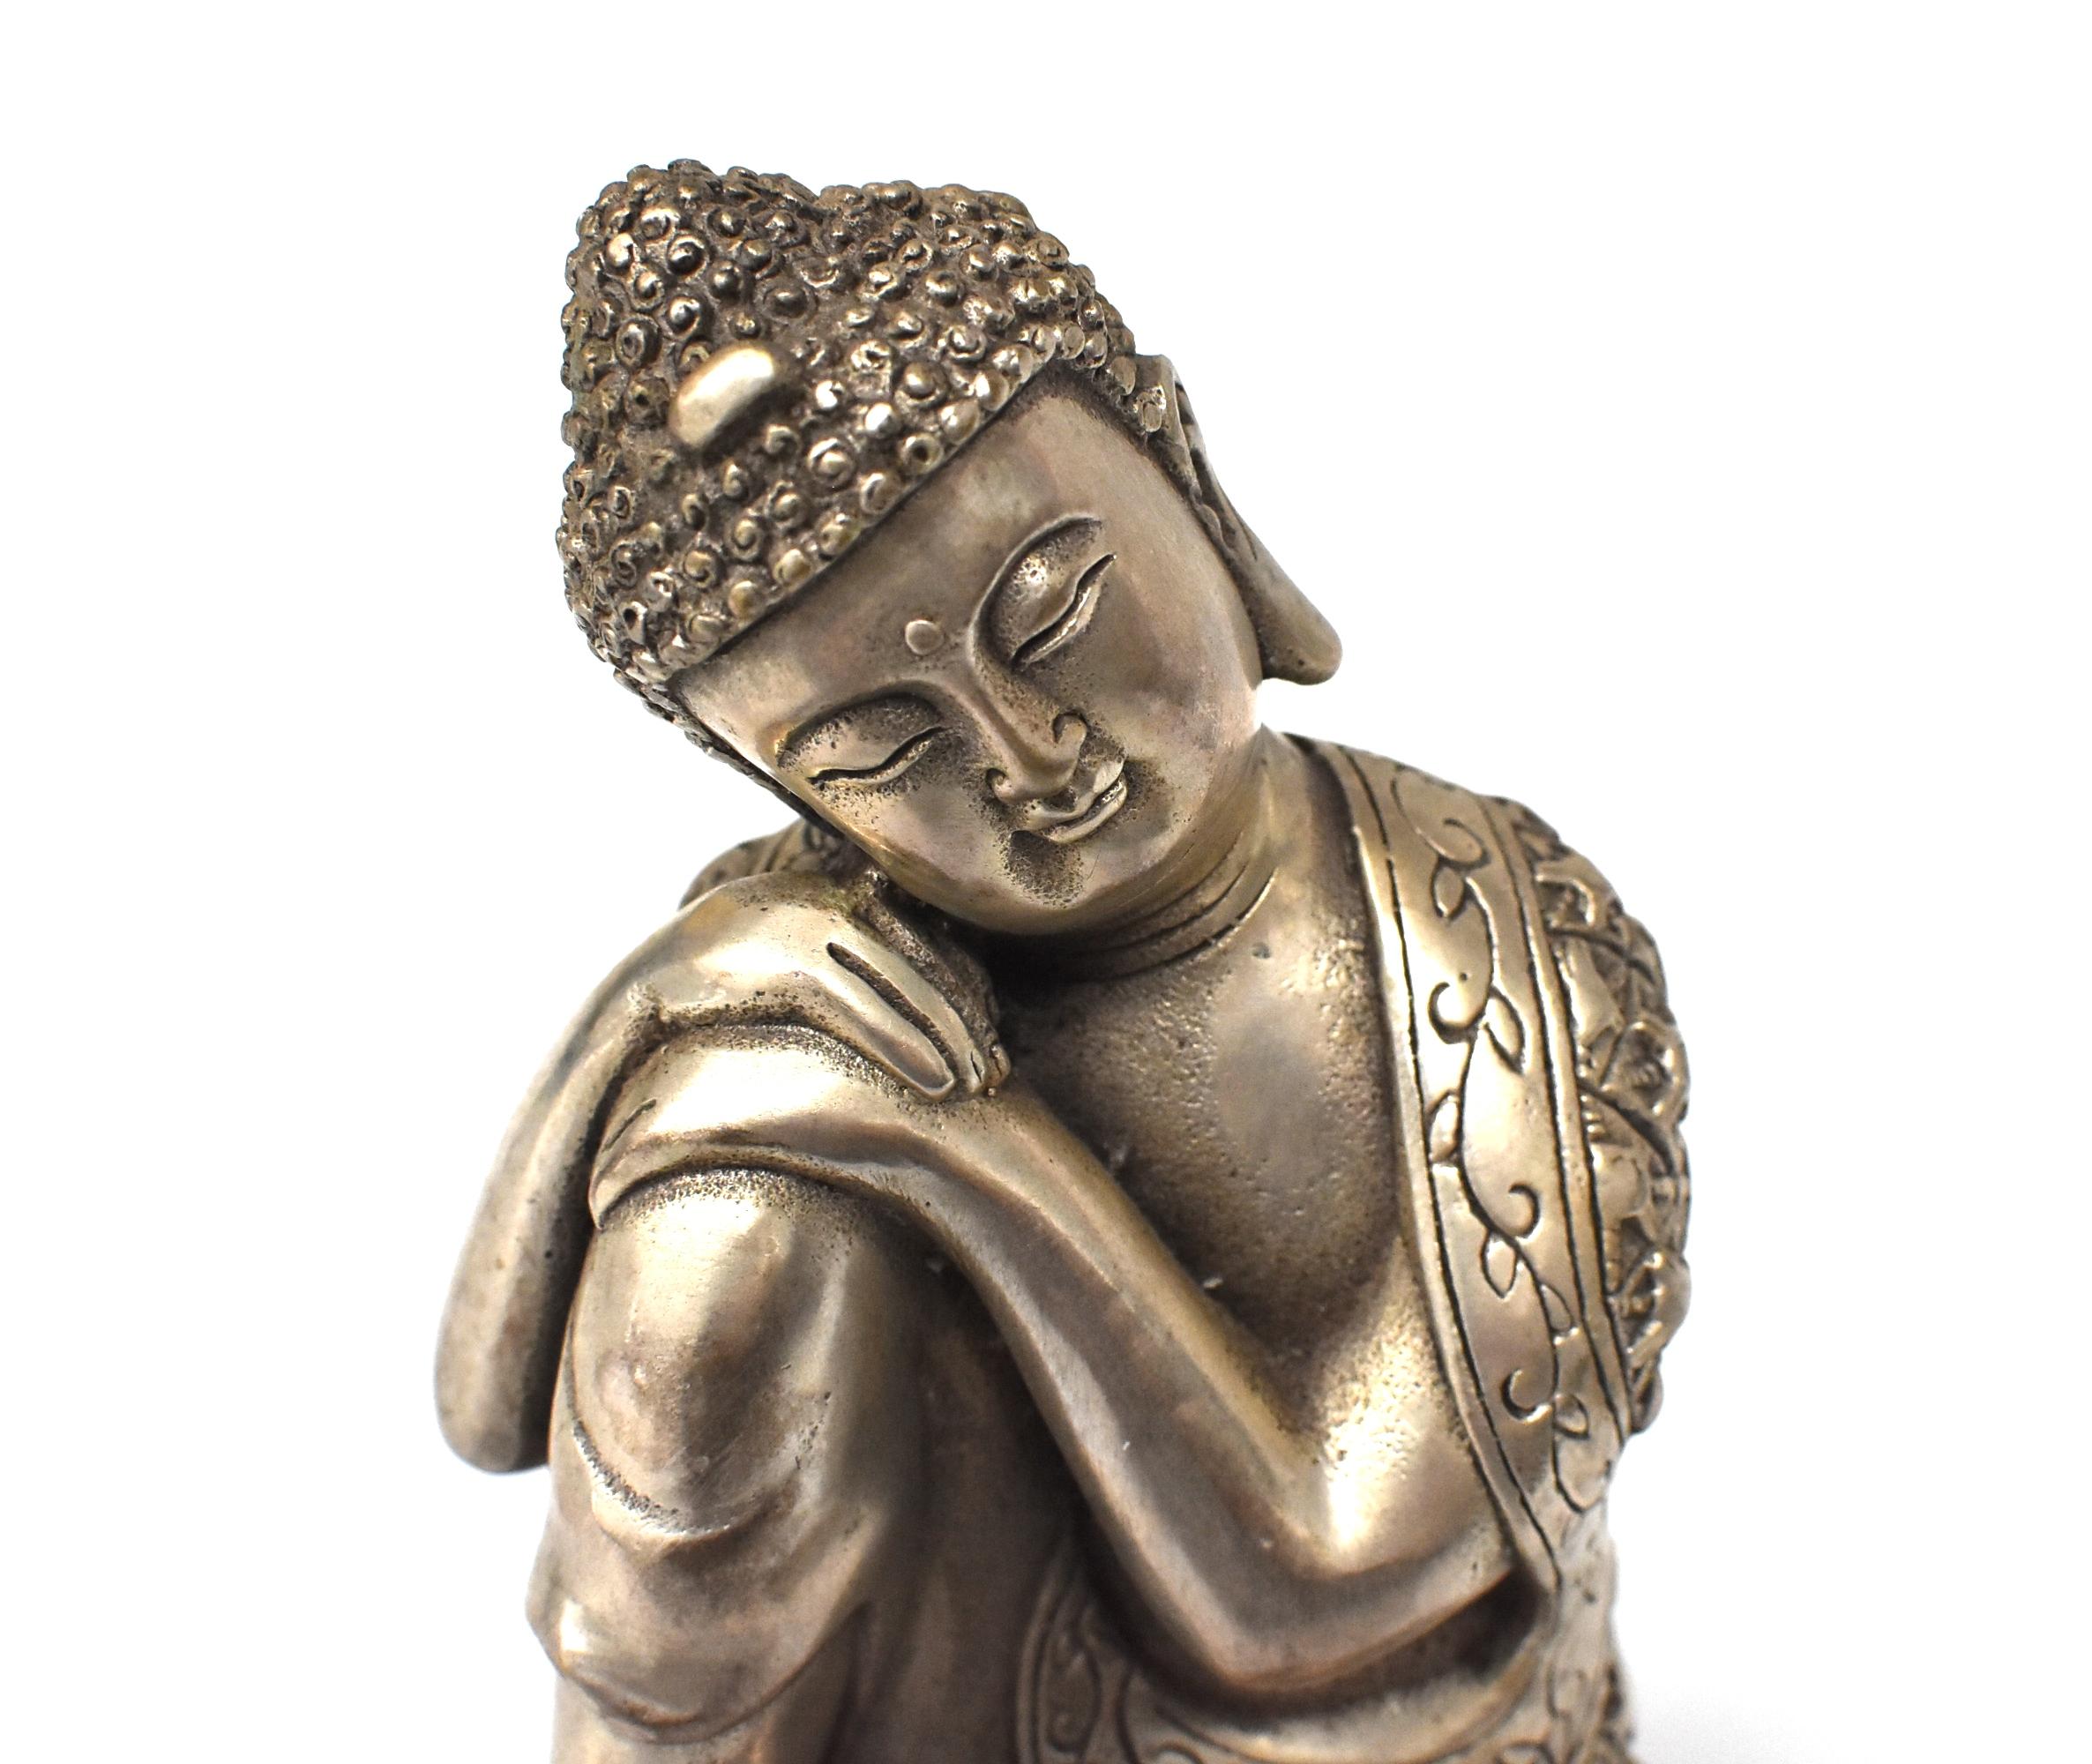 Silvered Brass Buddha Statue, a Thinking Buddha 5